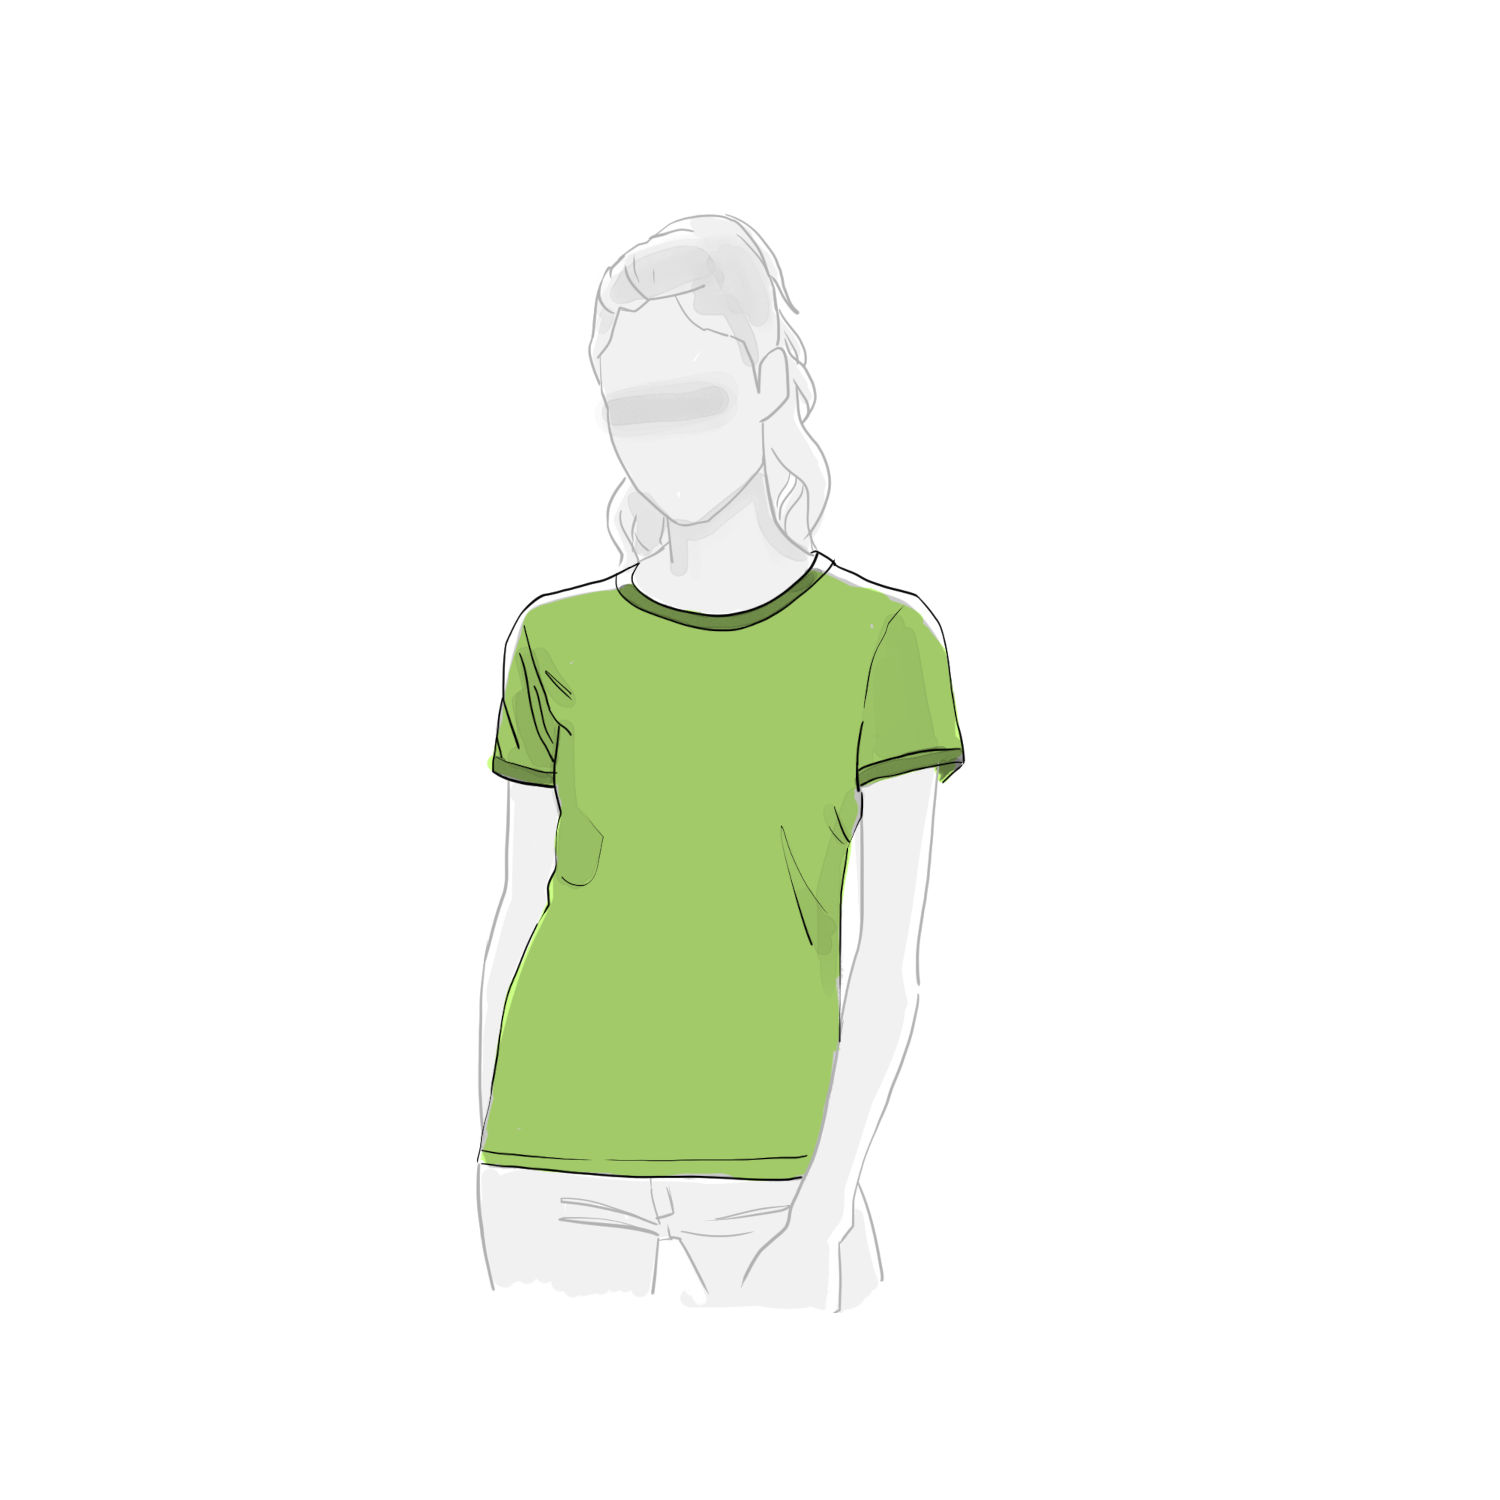  Artikelbild 1 des Artikels “The Evergreen Hemp T-Shirt M“